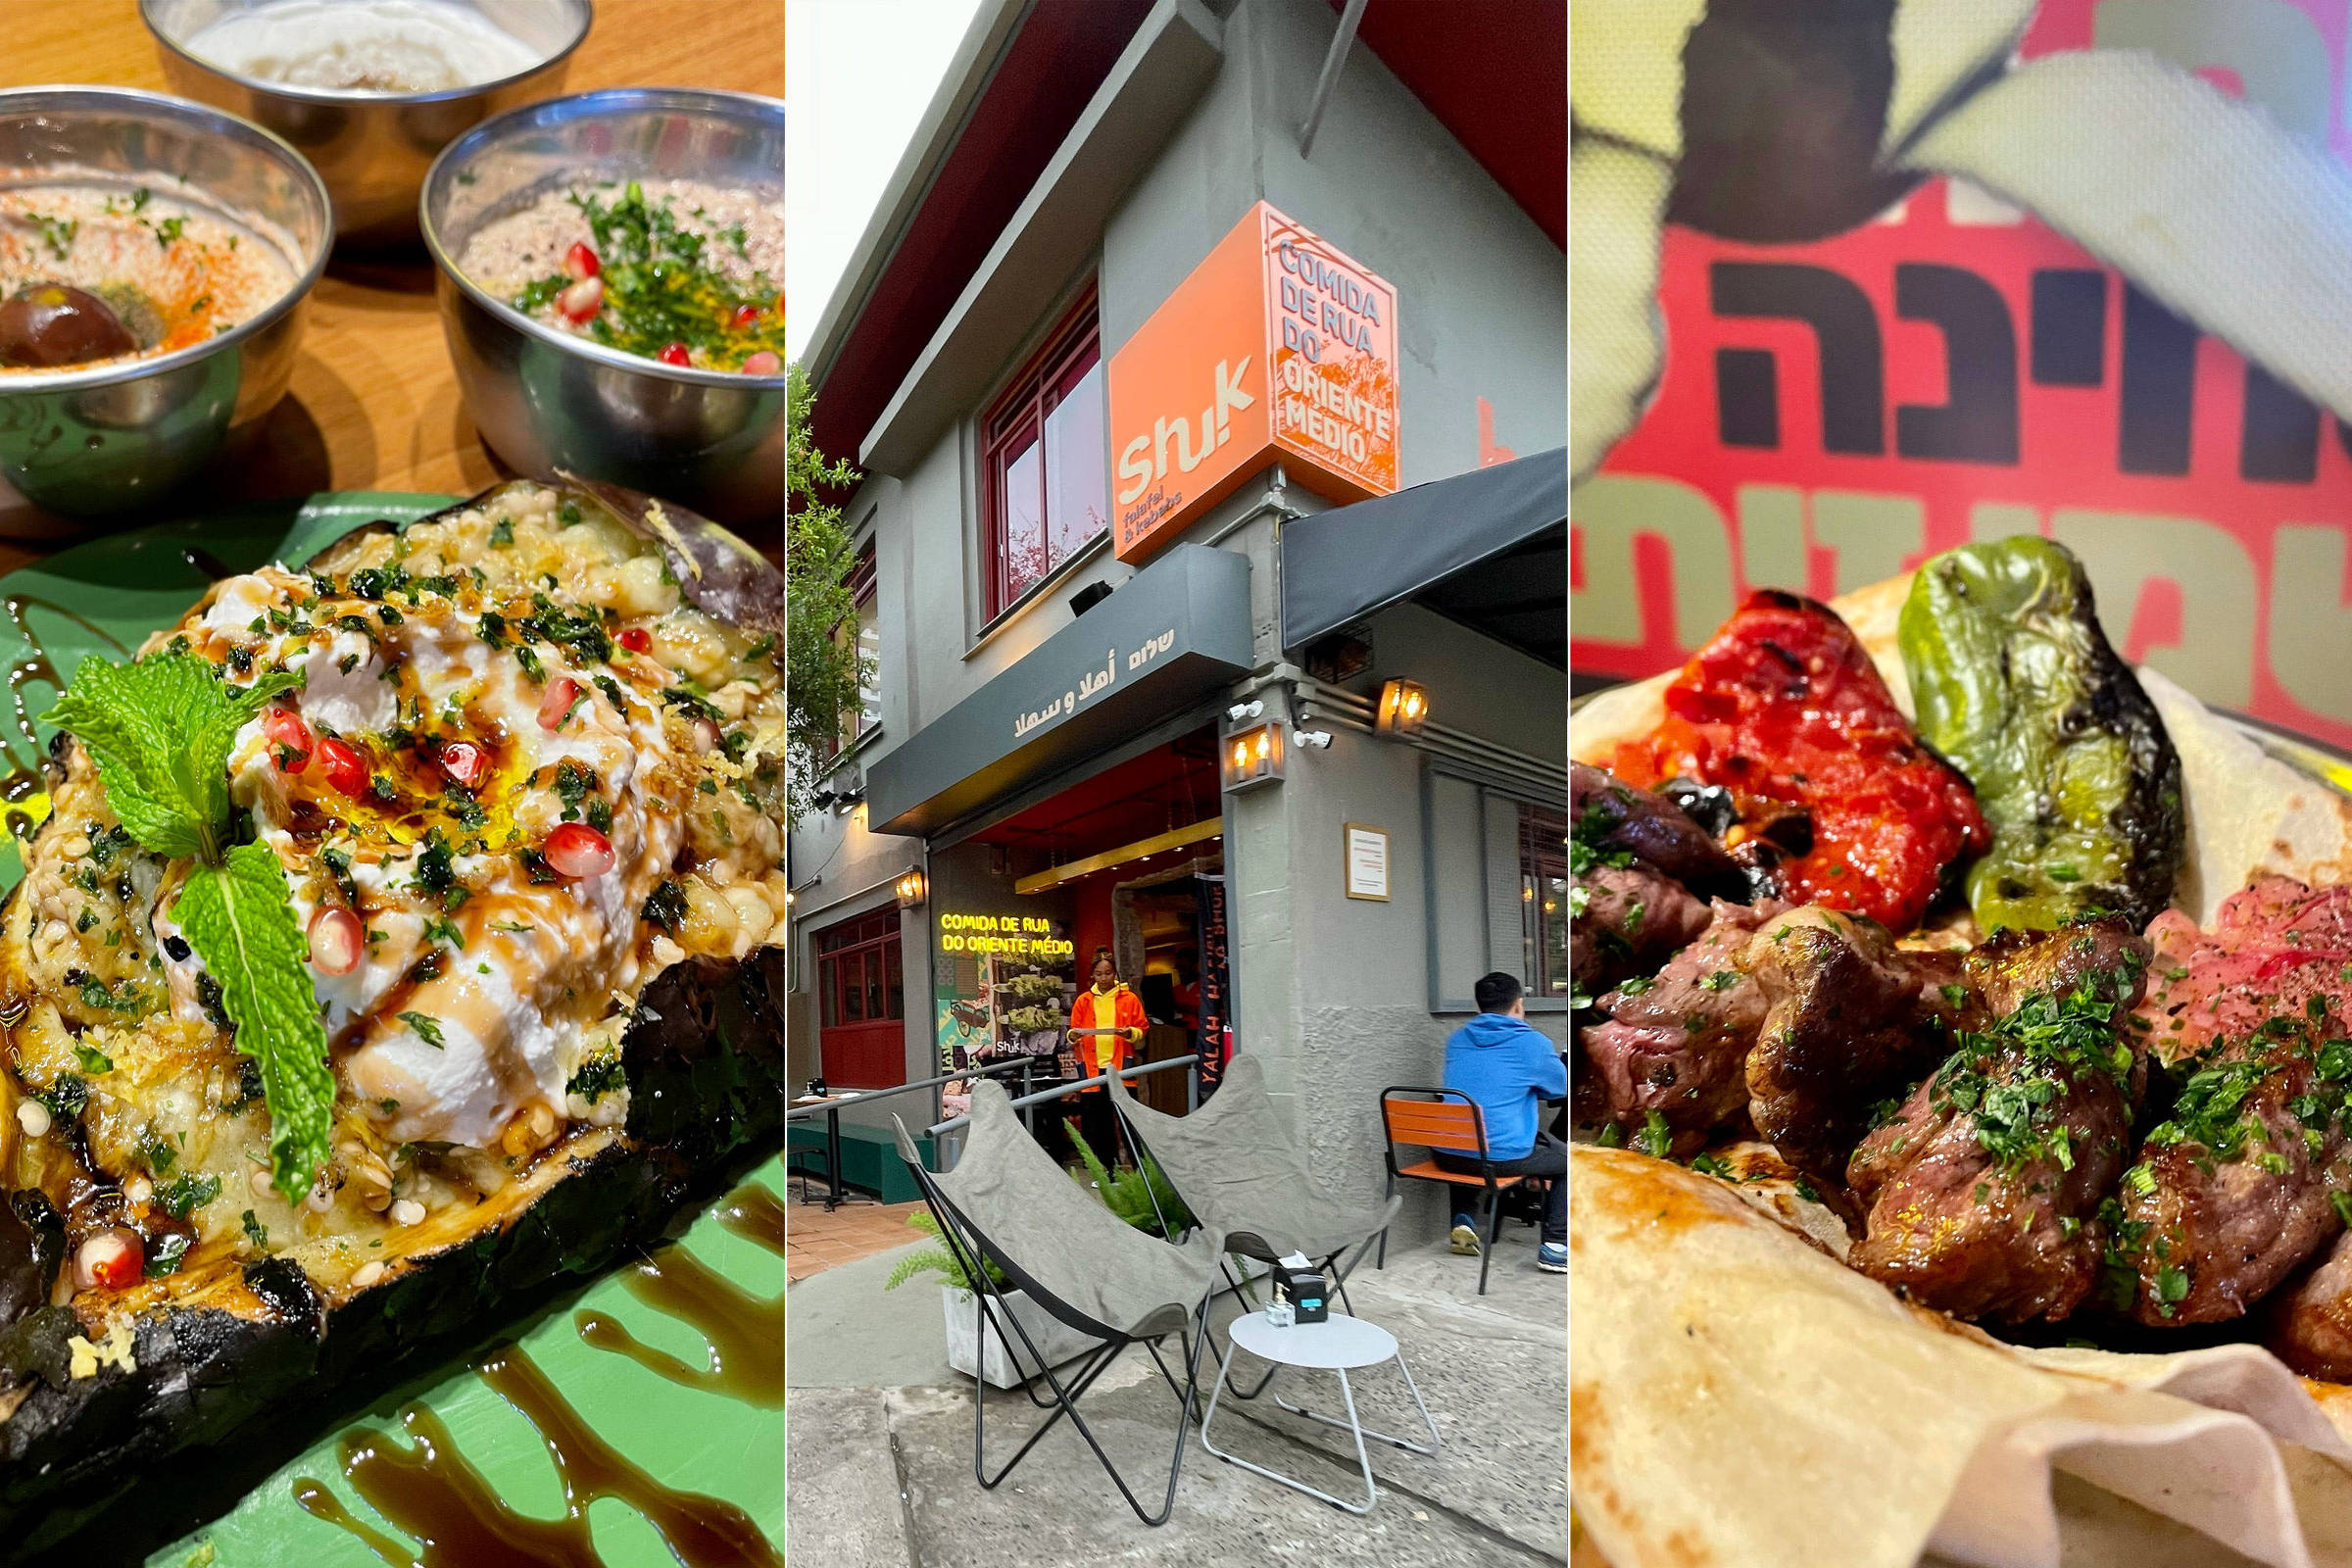 A comida de rua do Oriente Médio servida no Shuk, em Pinheiros - 22/08/2022  - Comida - Fotografia - Folha de S.Paulo